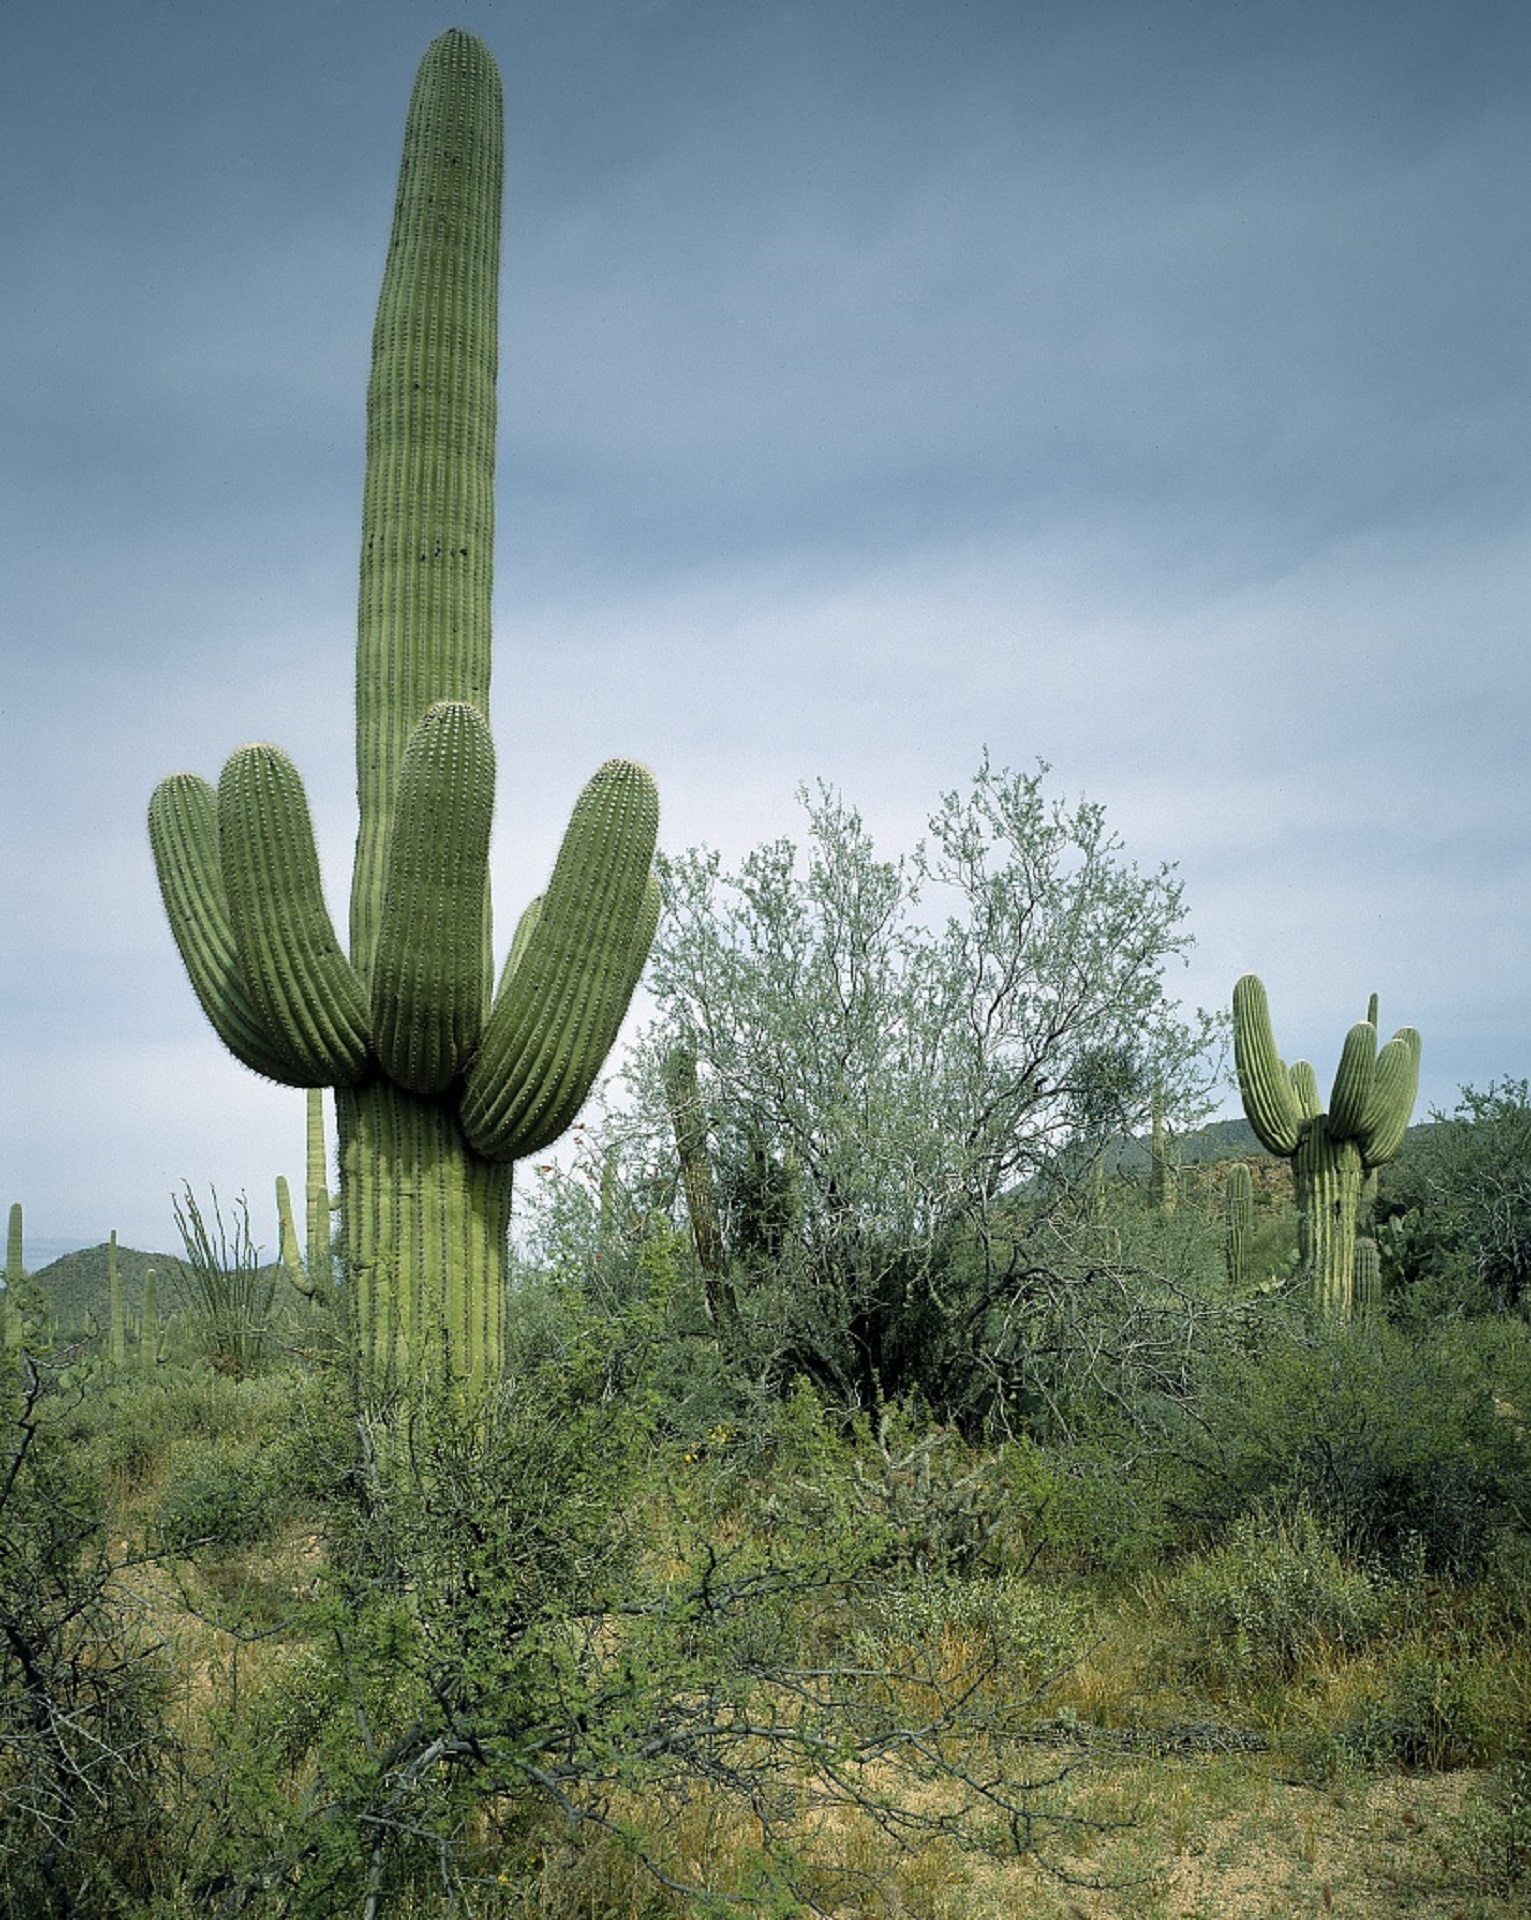 Cactus in the desert photo